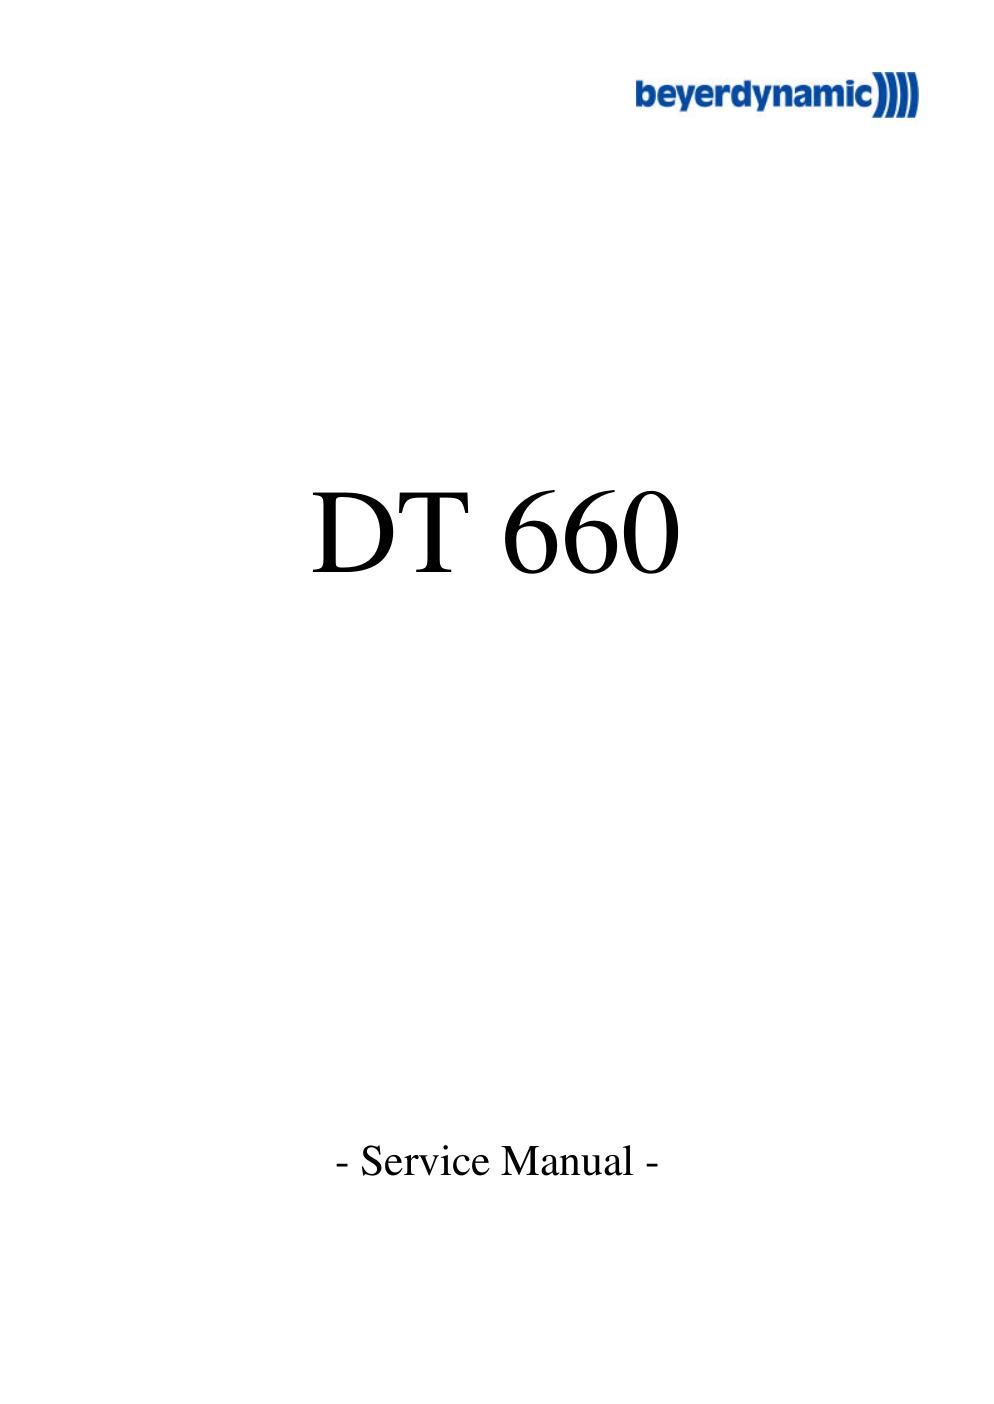 beyerdynamic dt 660 service manual